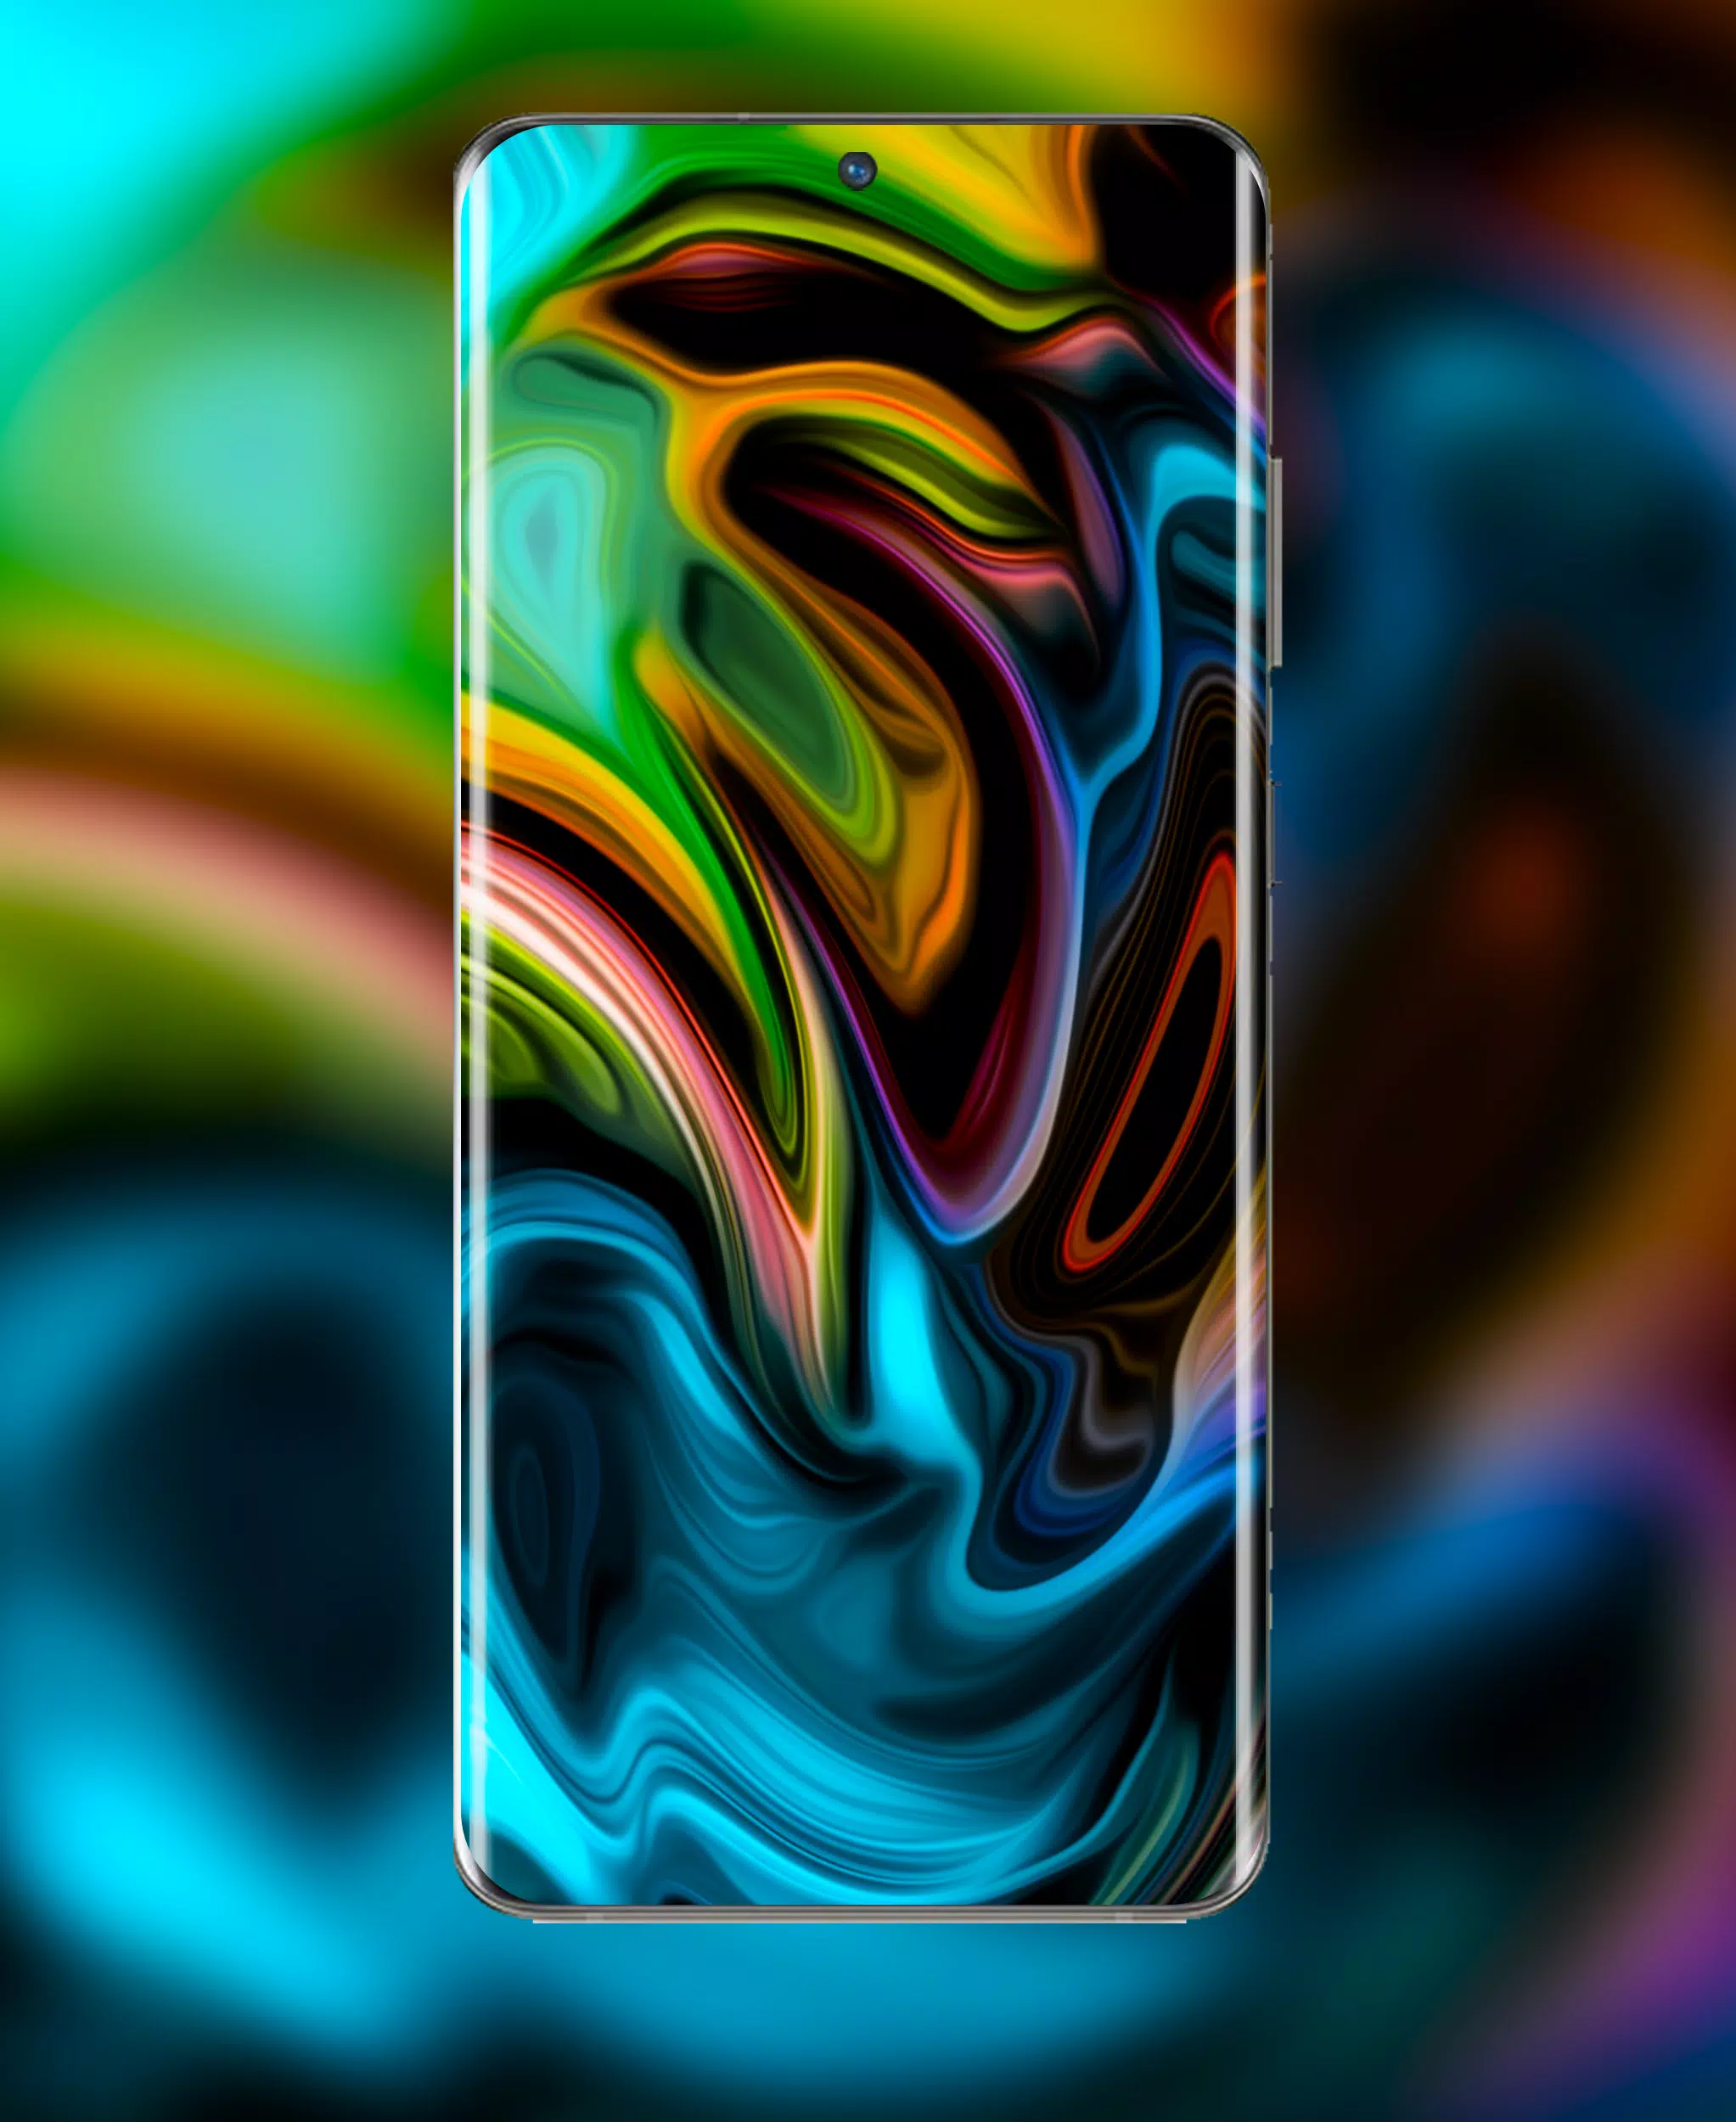 Tải về ngay Galaxy S22 Ultra Wallpaper APK cho Android của bạn để trải nghiệm tổng thể tuyệt vời của sản phẩm Samsung mới nhất. Nhiều lựa chọn tuyệt đẹp đang được chờ đợi bạn.